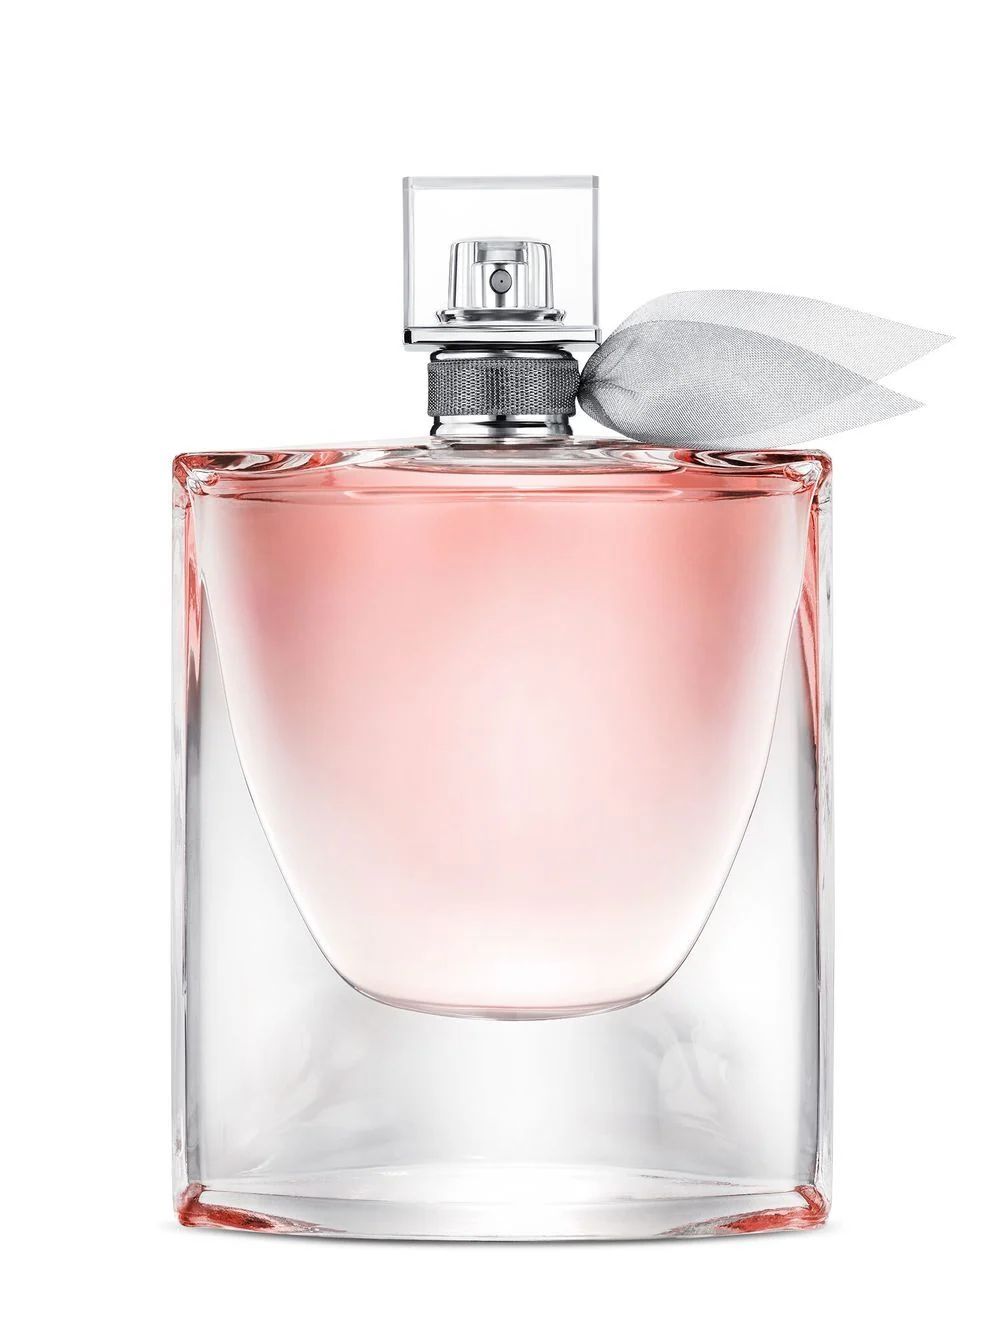 La Vie Est Belle eau de parfum | Farfetch Global